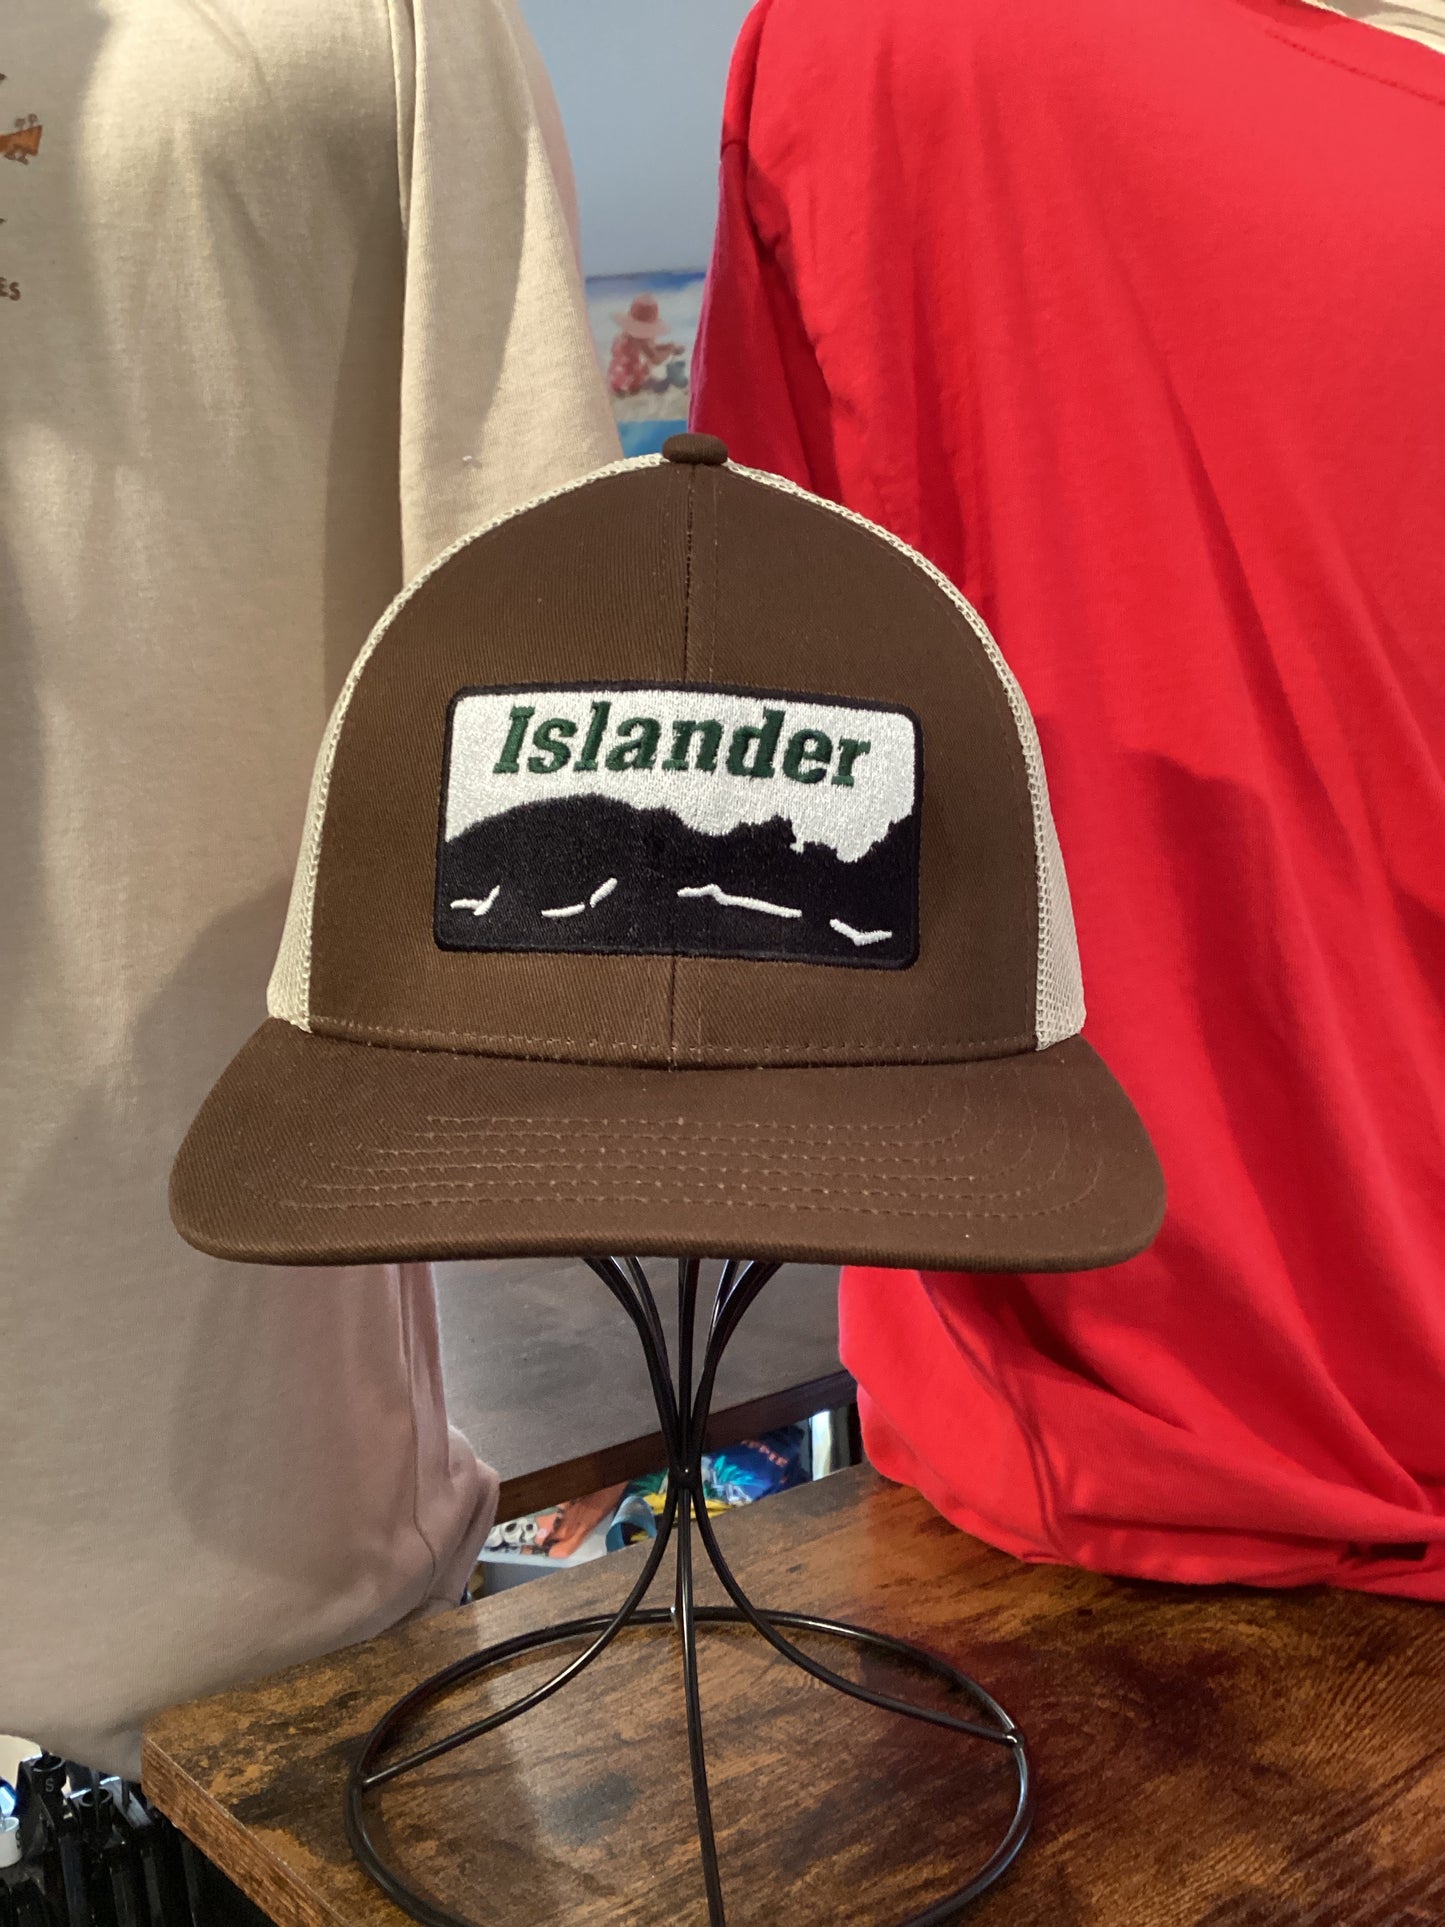 Islander coastline caps